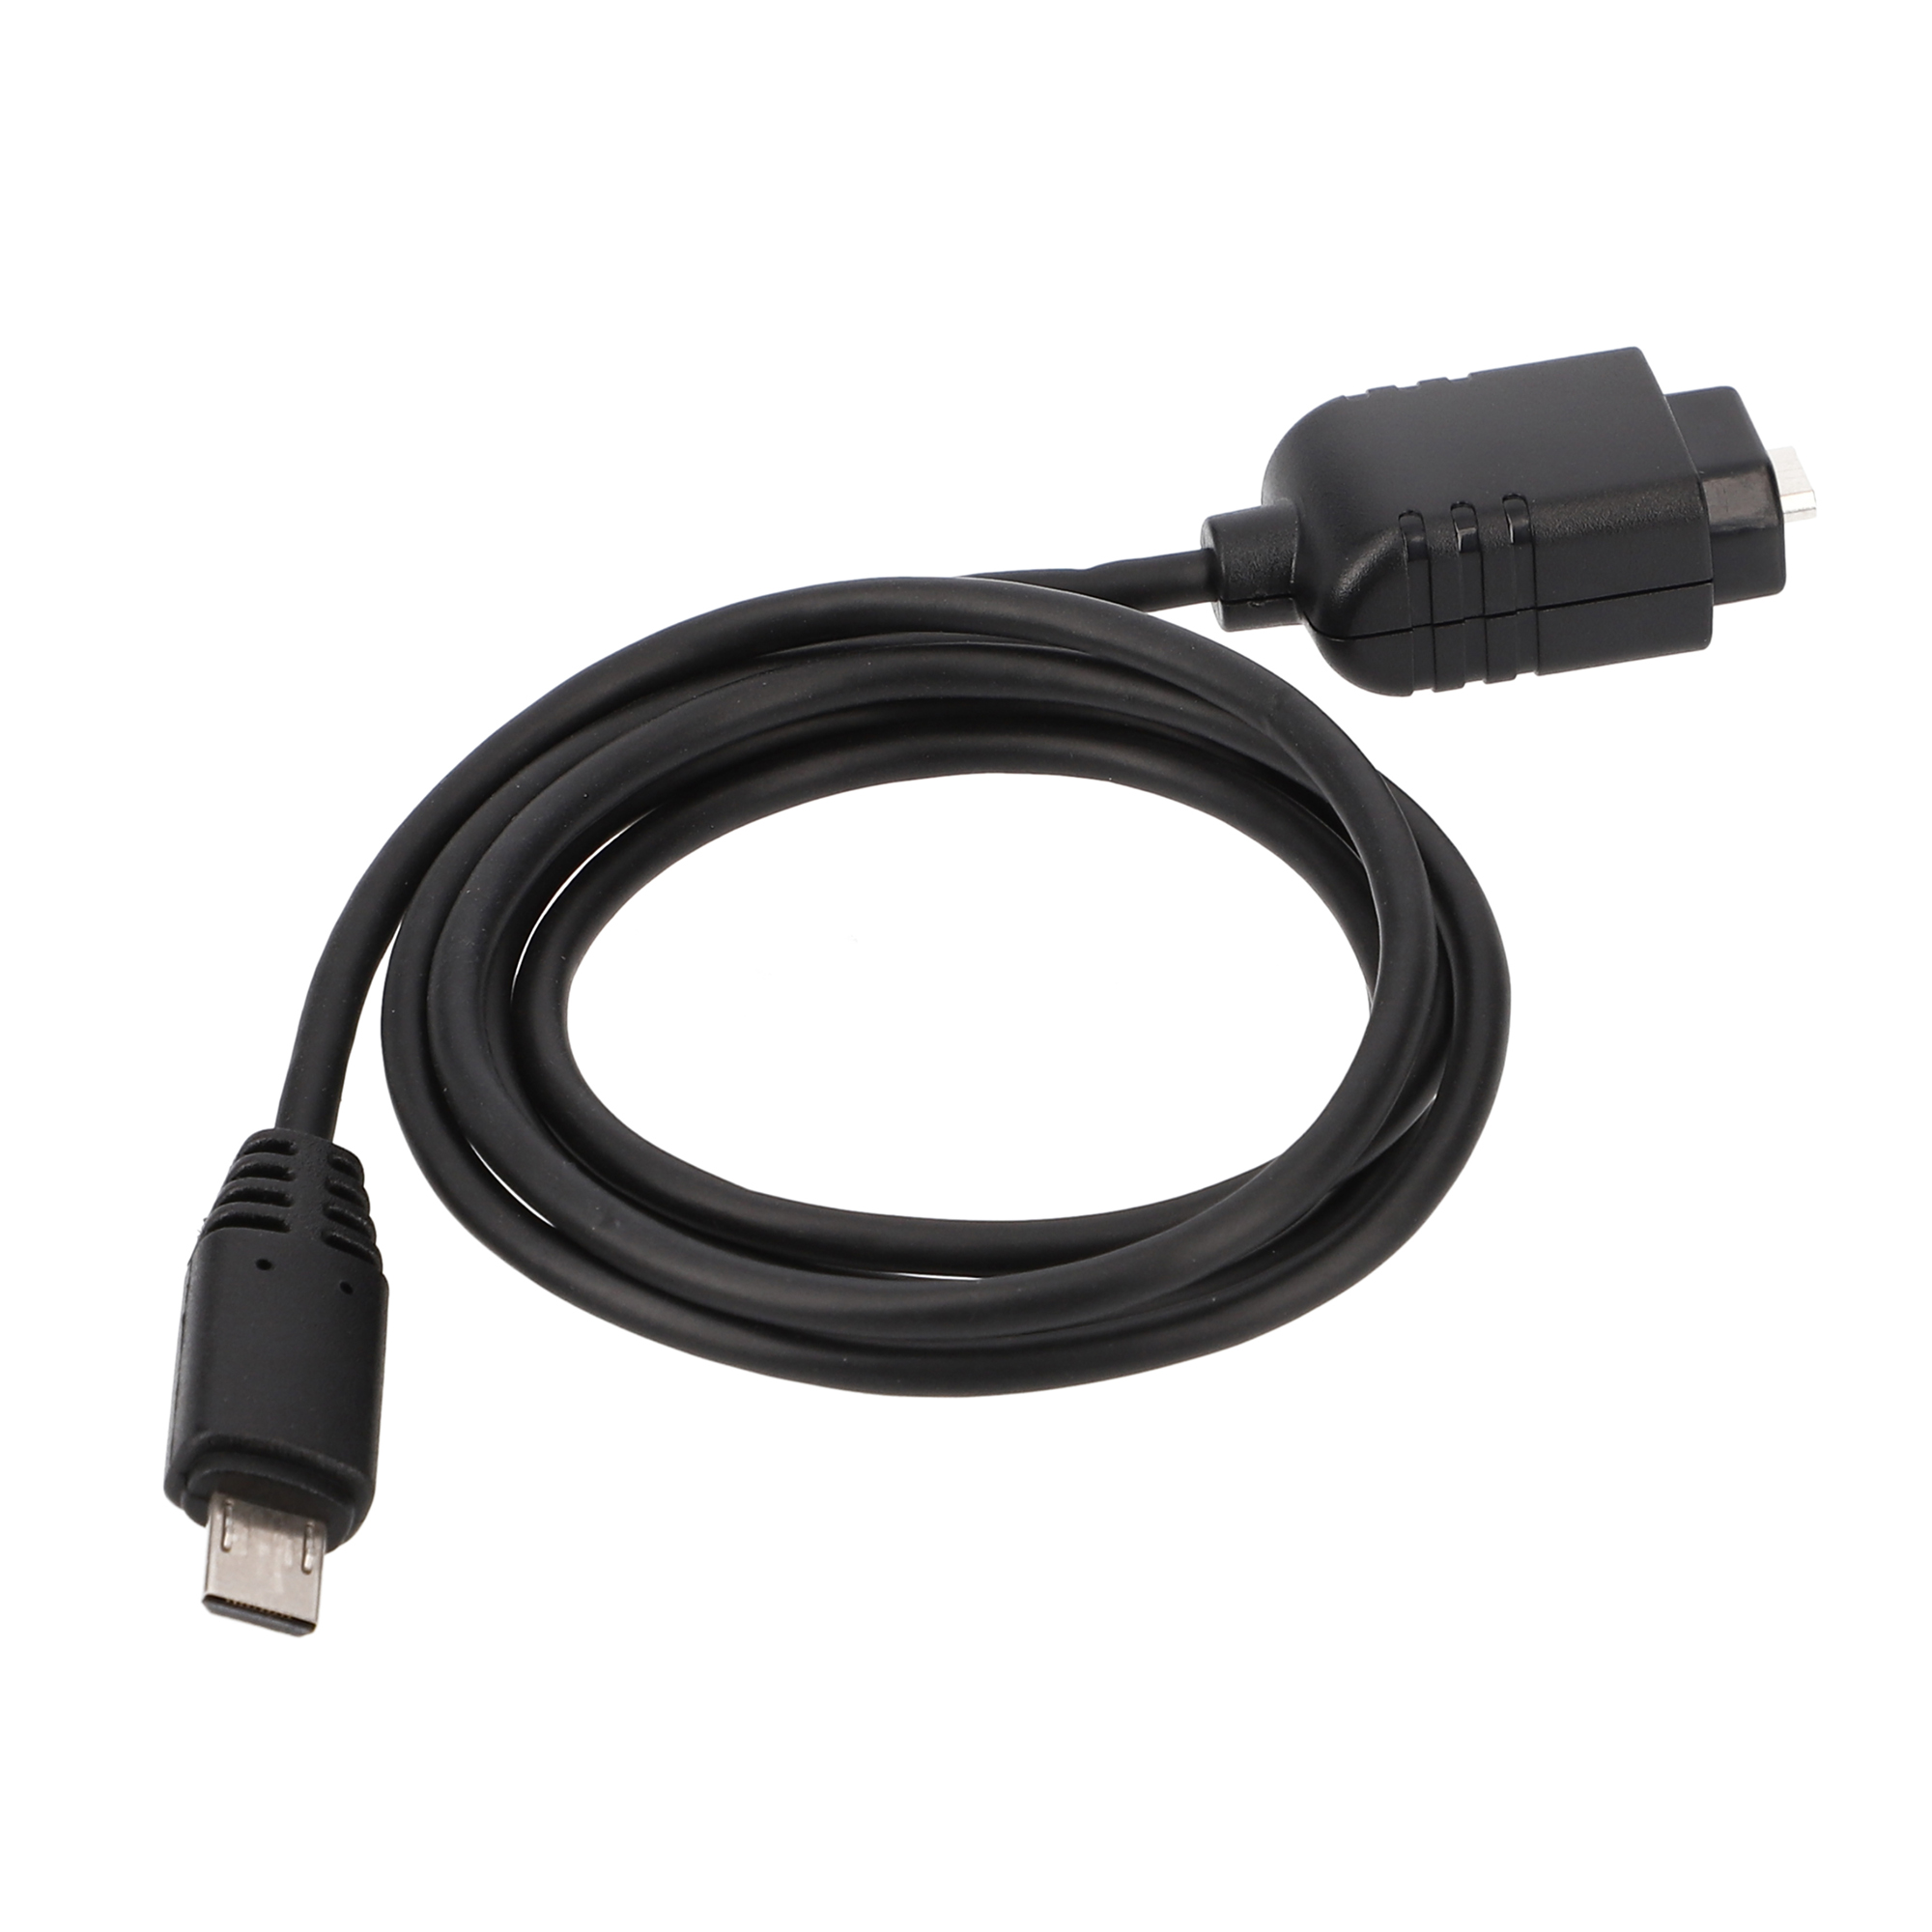 ayex VMC-MM1 USB Multi Terminal Connecting Kabel Für Sony Kameras, 1 Meter